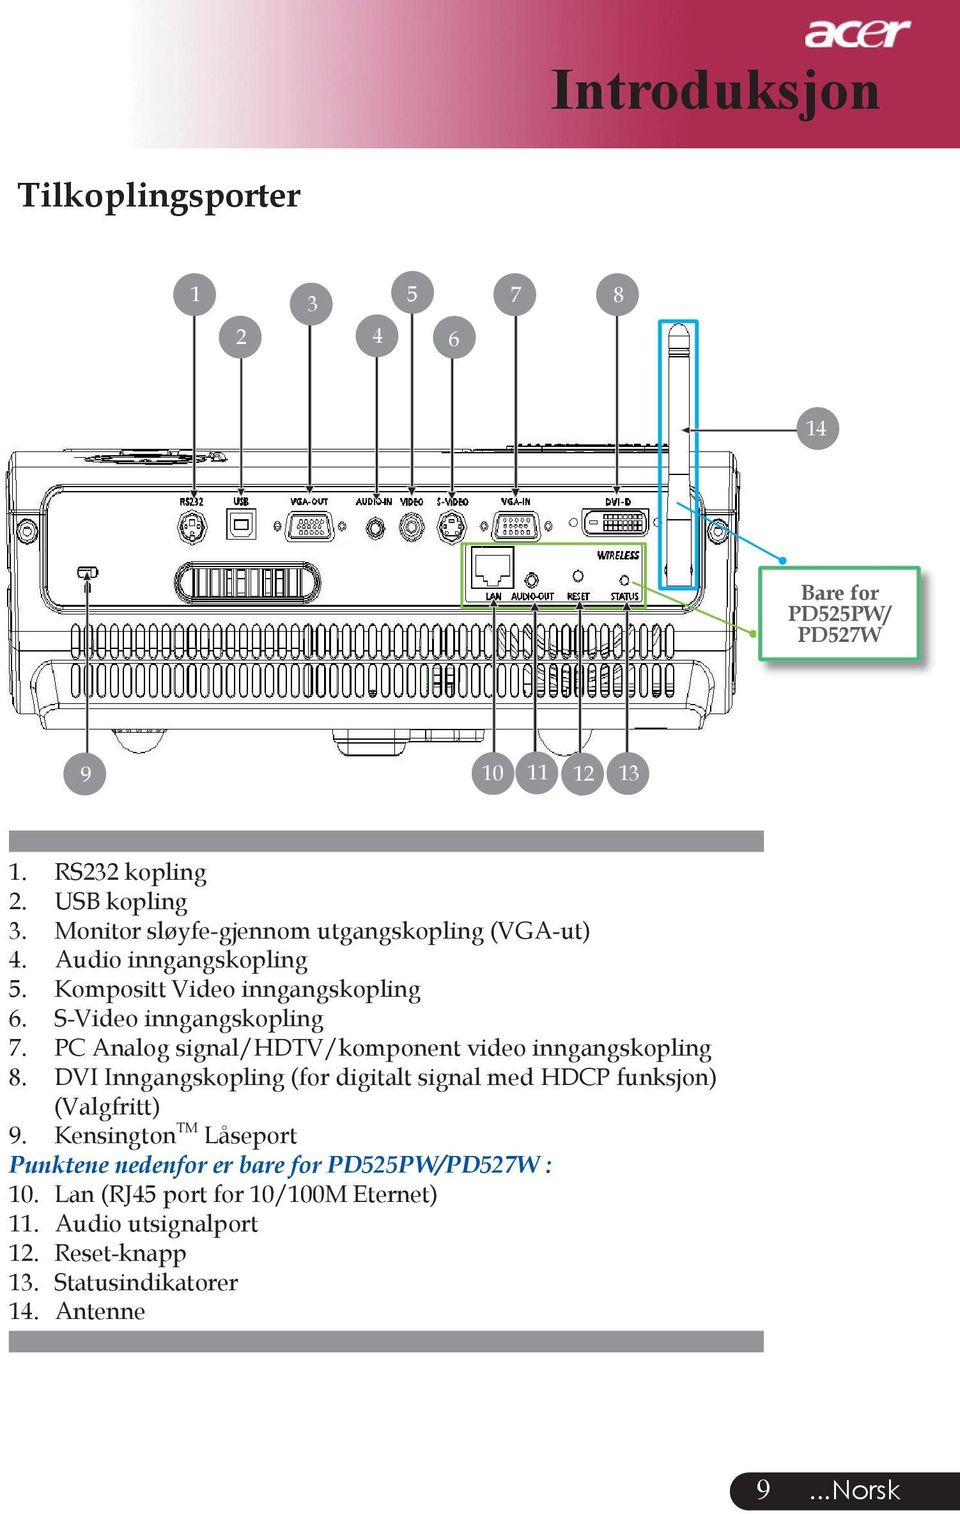 PC Analog signal/hdtv/komponent video inngangskopling 8. DVI Inngangskopling (for digitalt signal med HDCP funksjon) (Valgfritt) 9.